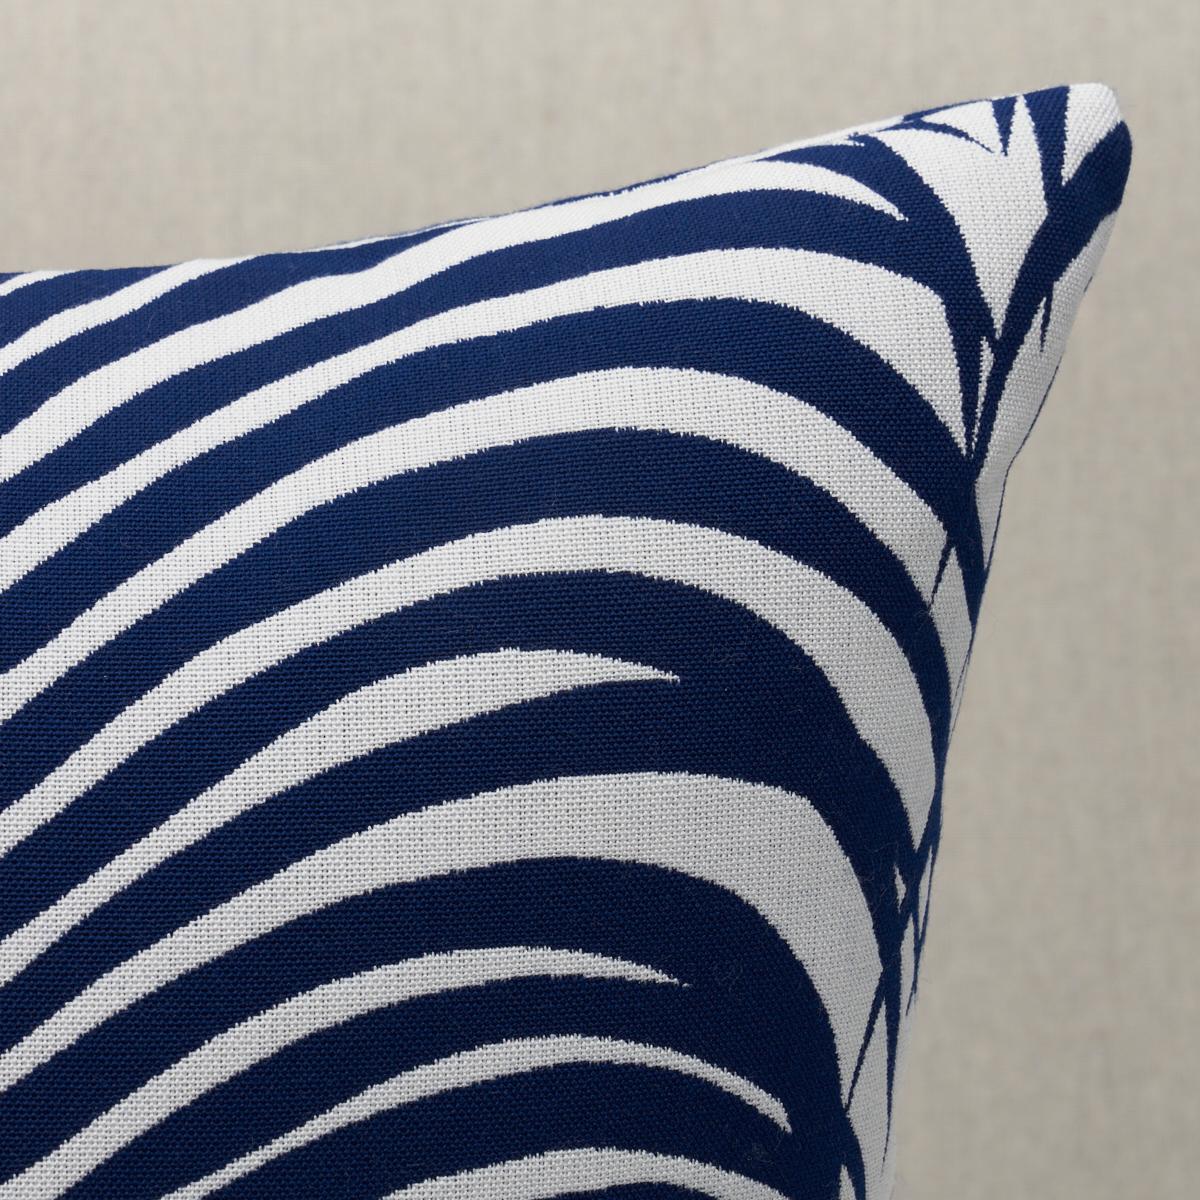 Zebra Palm I/O Pillow_NAVY